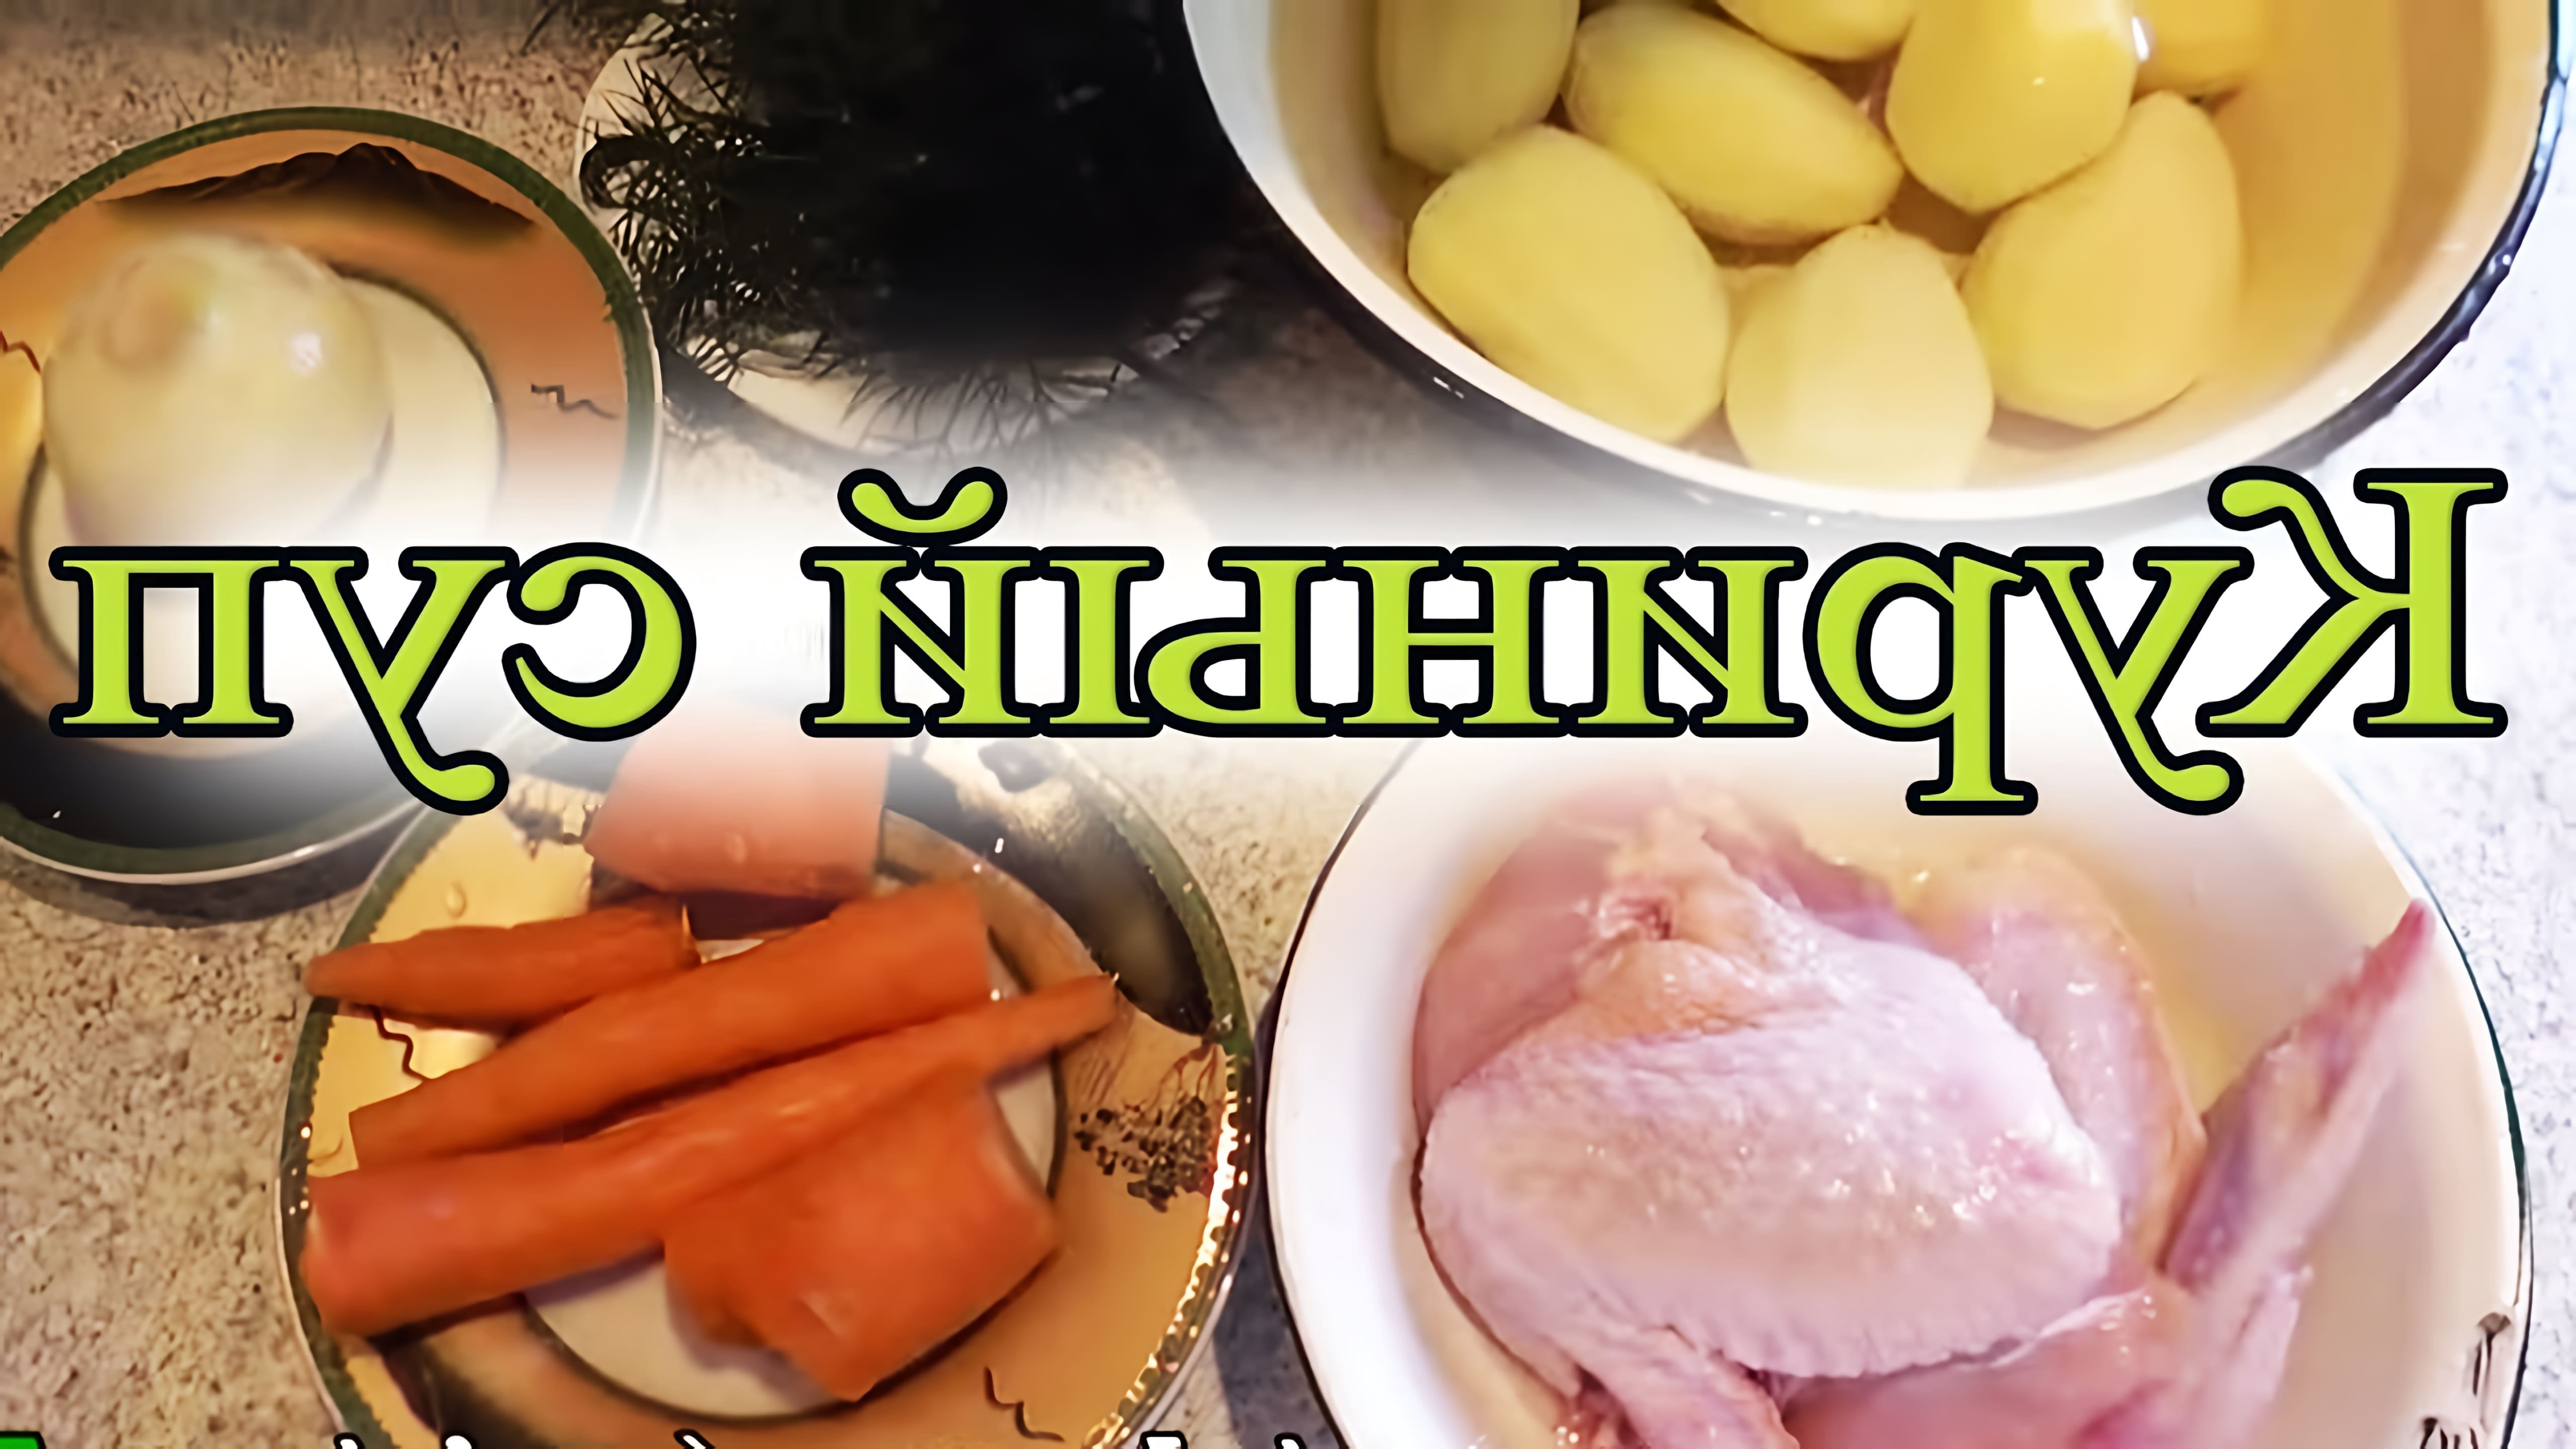 В этом видео демонстрируется процесс приготовления куриного супа